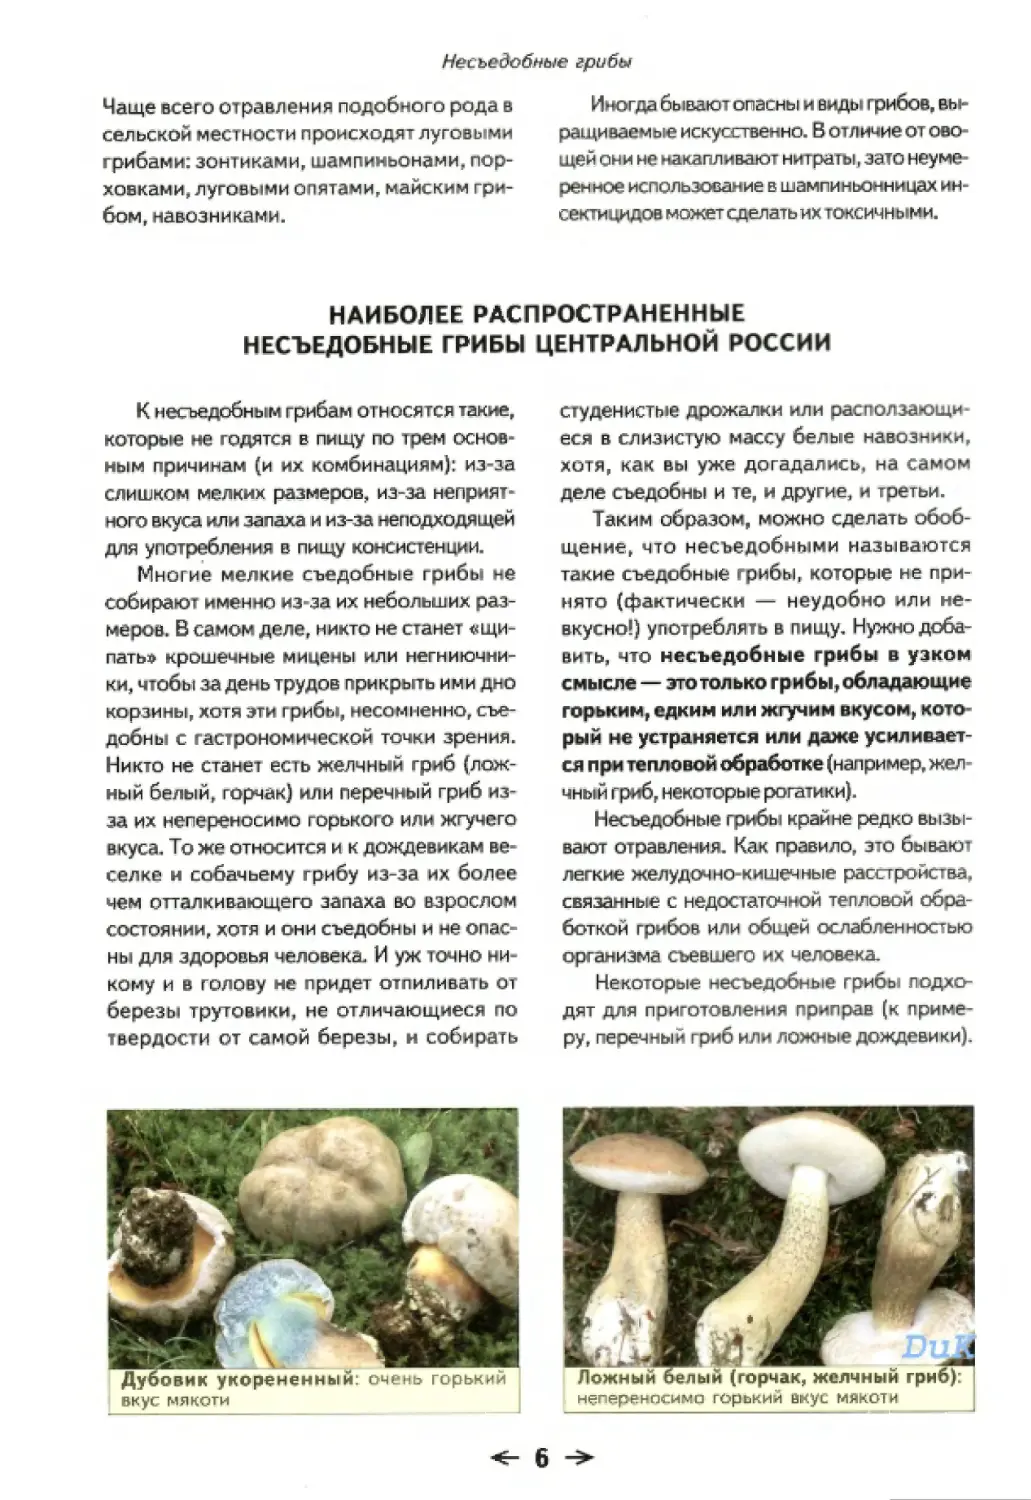 Похожие грибы ядовитые двойники